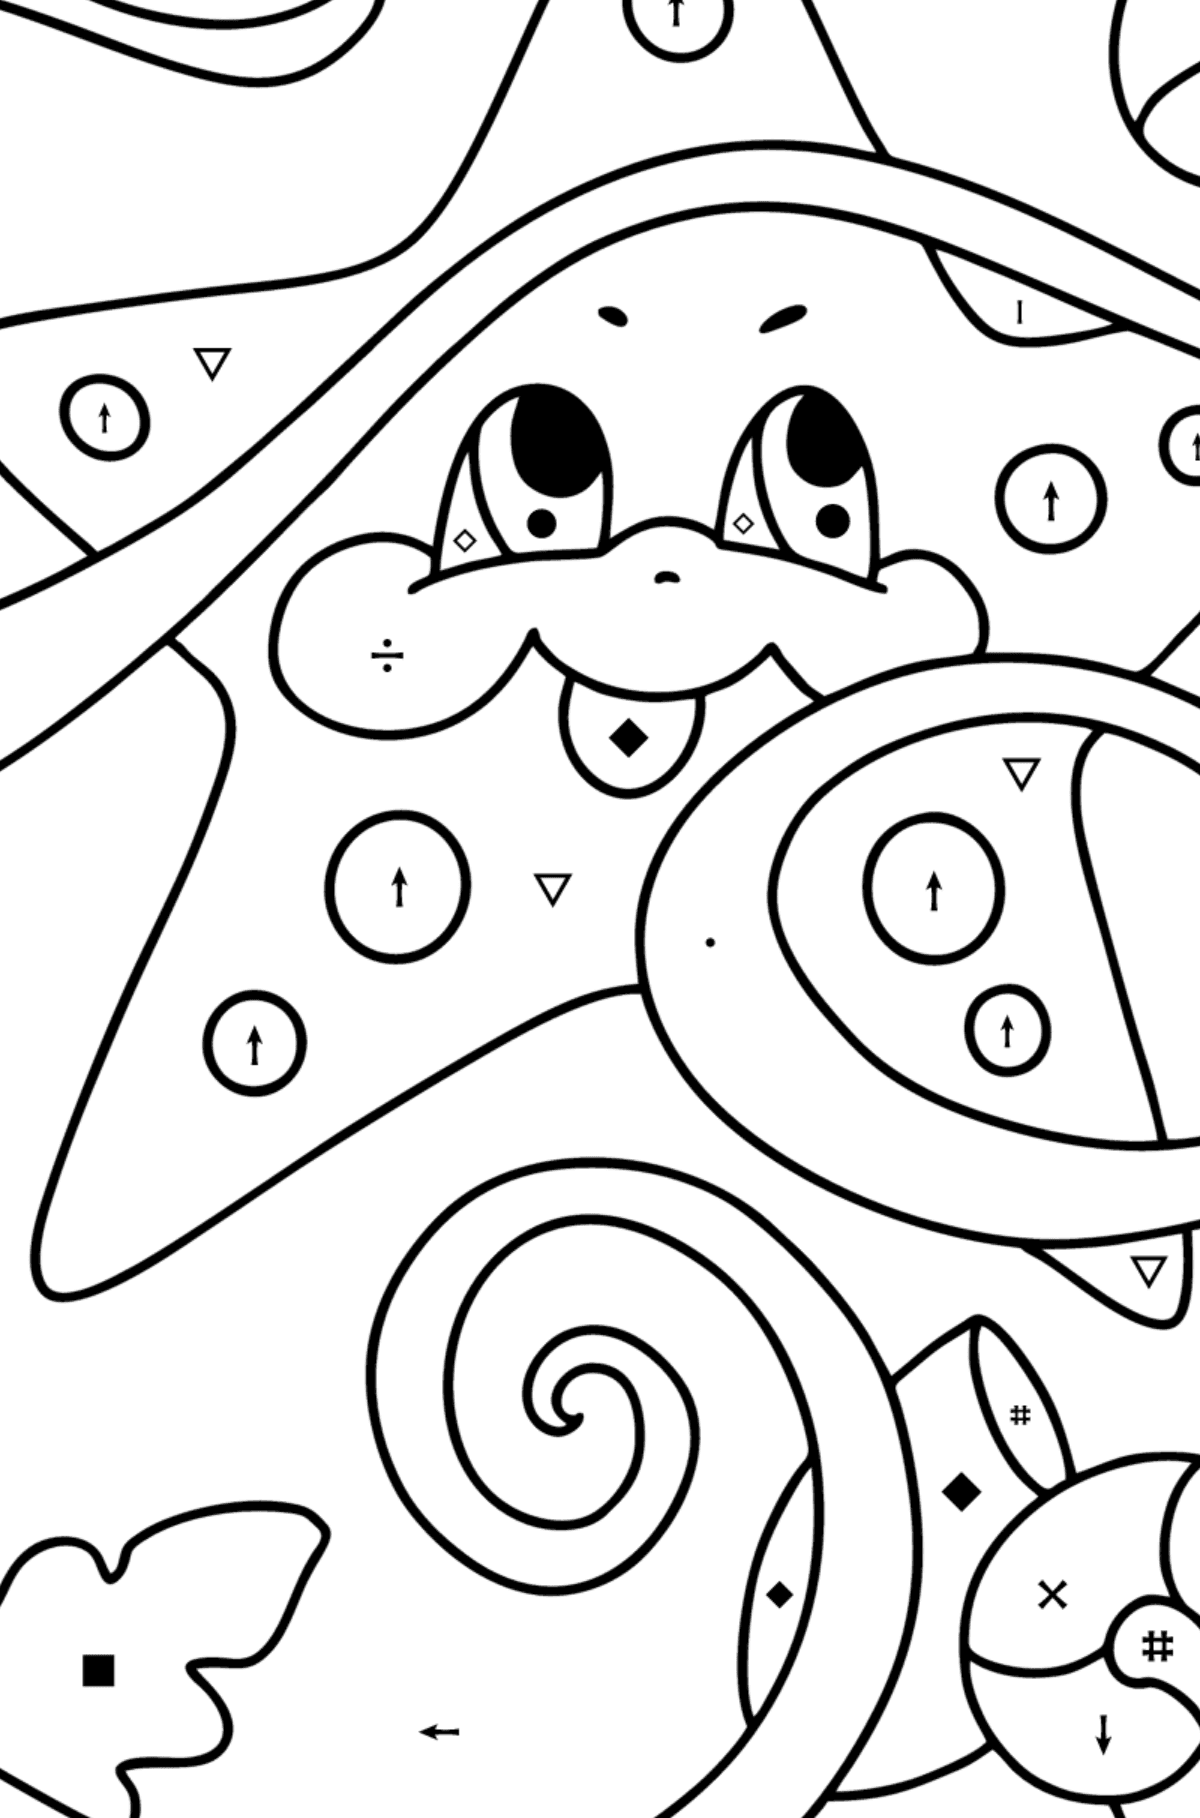 Coloriage Bébé étoile de mer - Coloriage par Symboles pour les Enfants